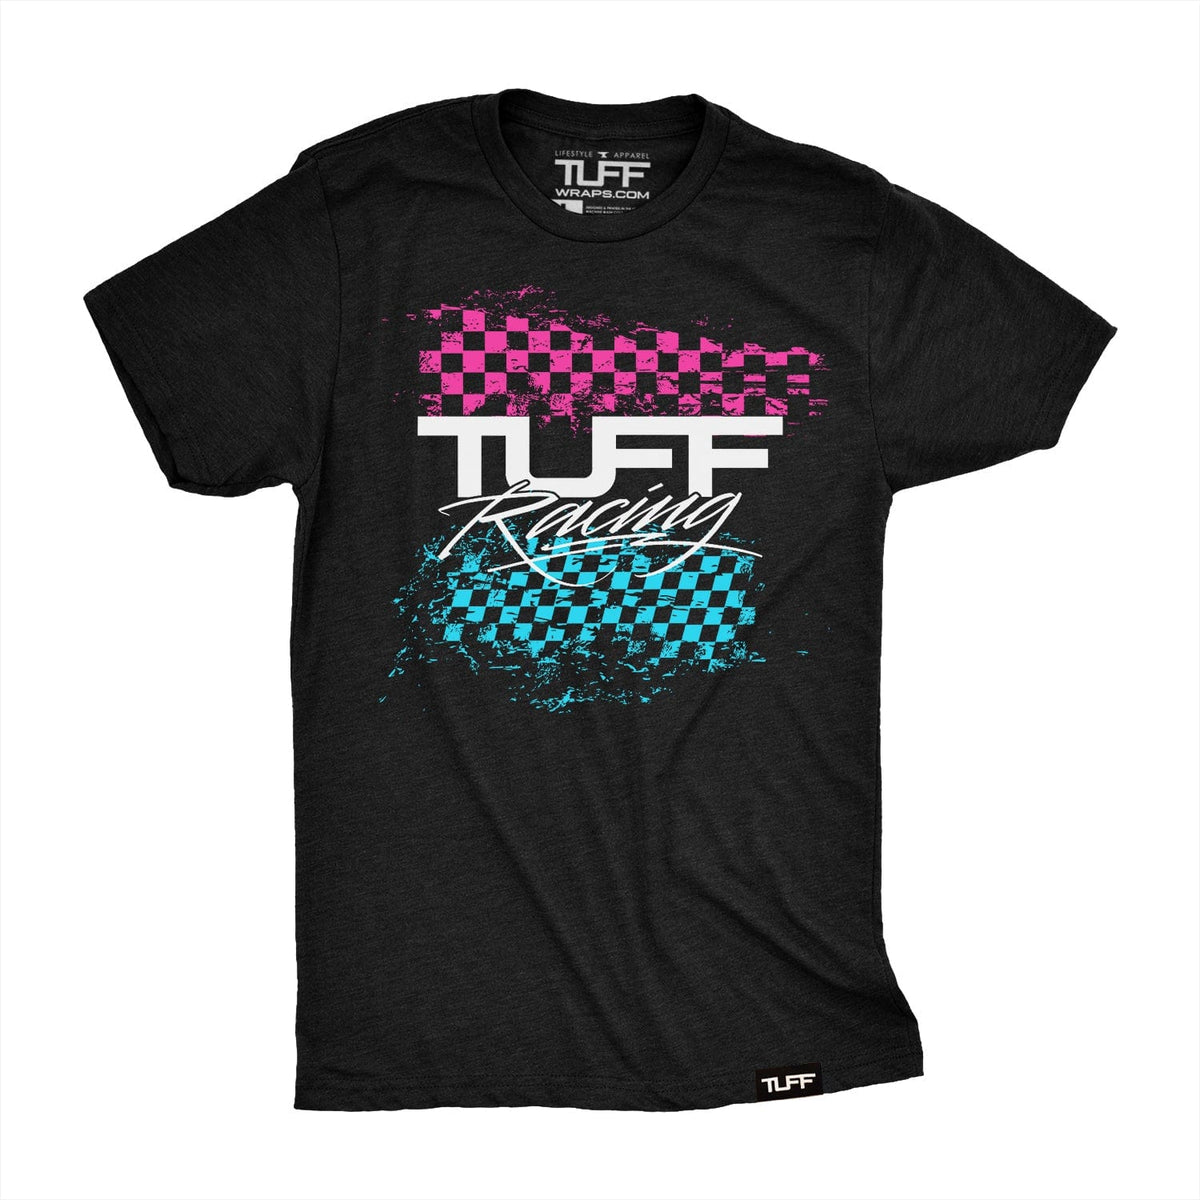 TUFF Racing Tee S / Black / 3 TuffWraps.com